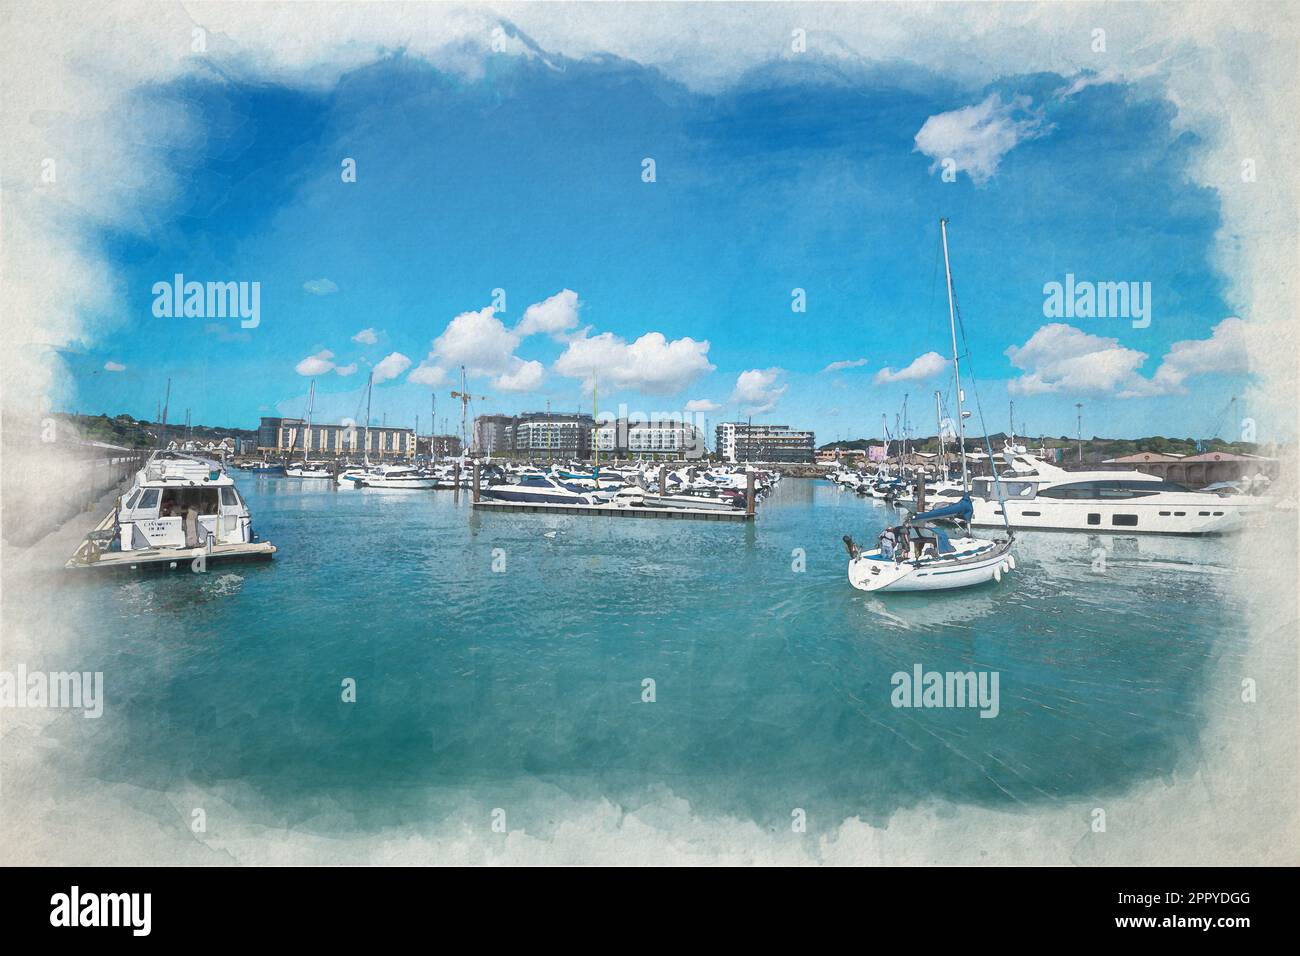 Barche ormeggiate a Elizabeth Marina. Un dipinto digitale ad acquerello del porto di St Helier della dipendenza dalla Corona britannica di Jersey, Isole del canale, Brit Foto Stock